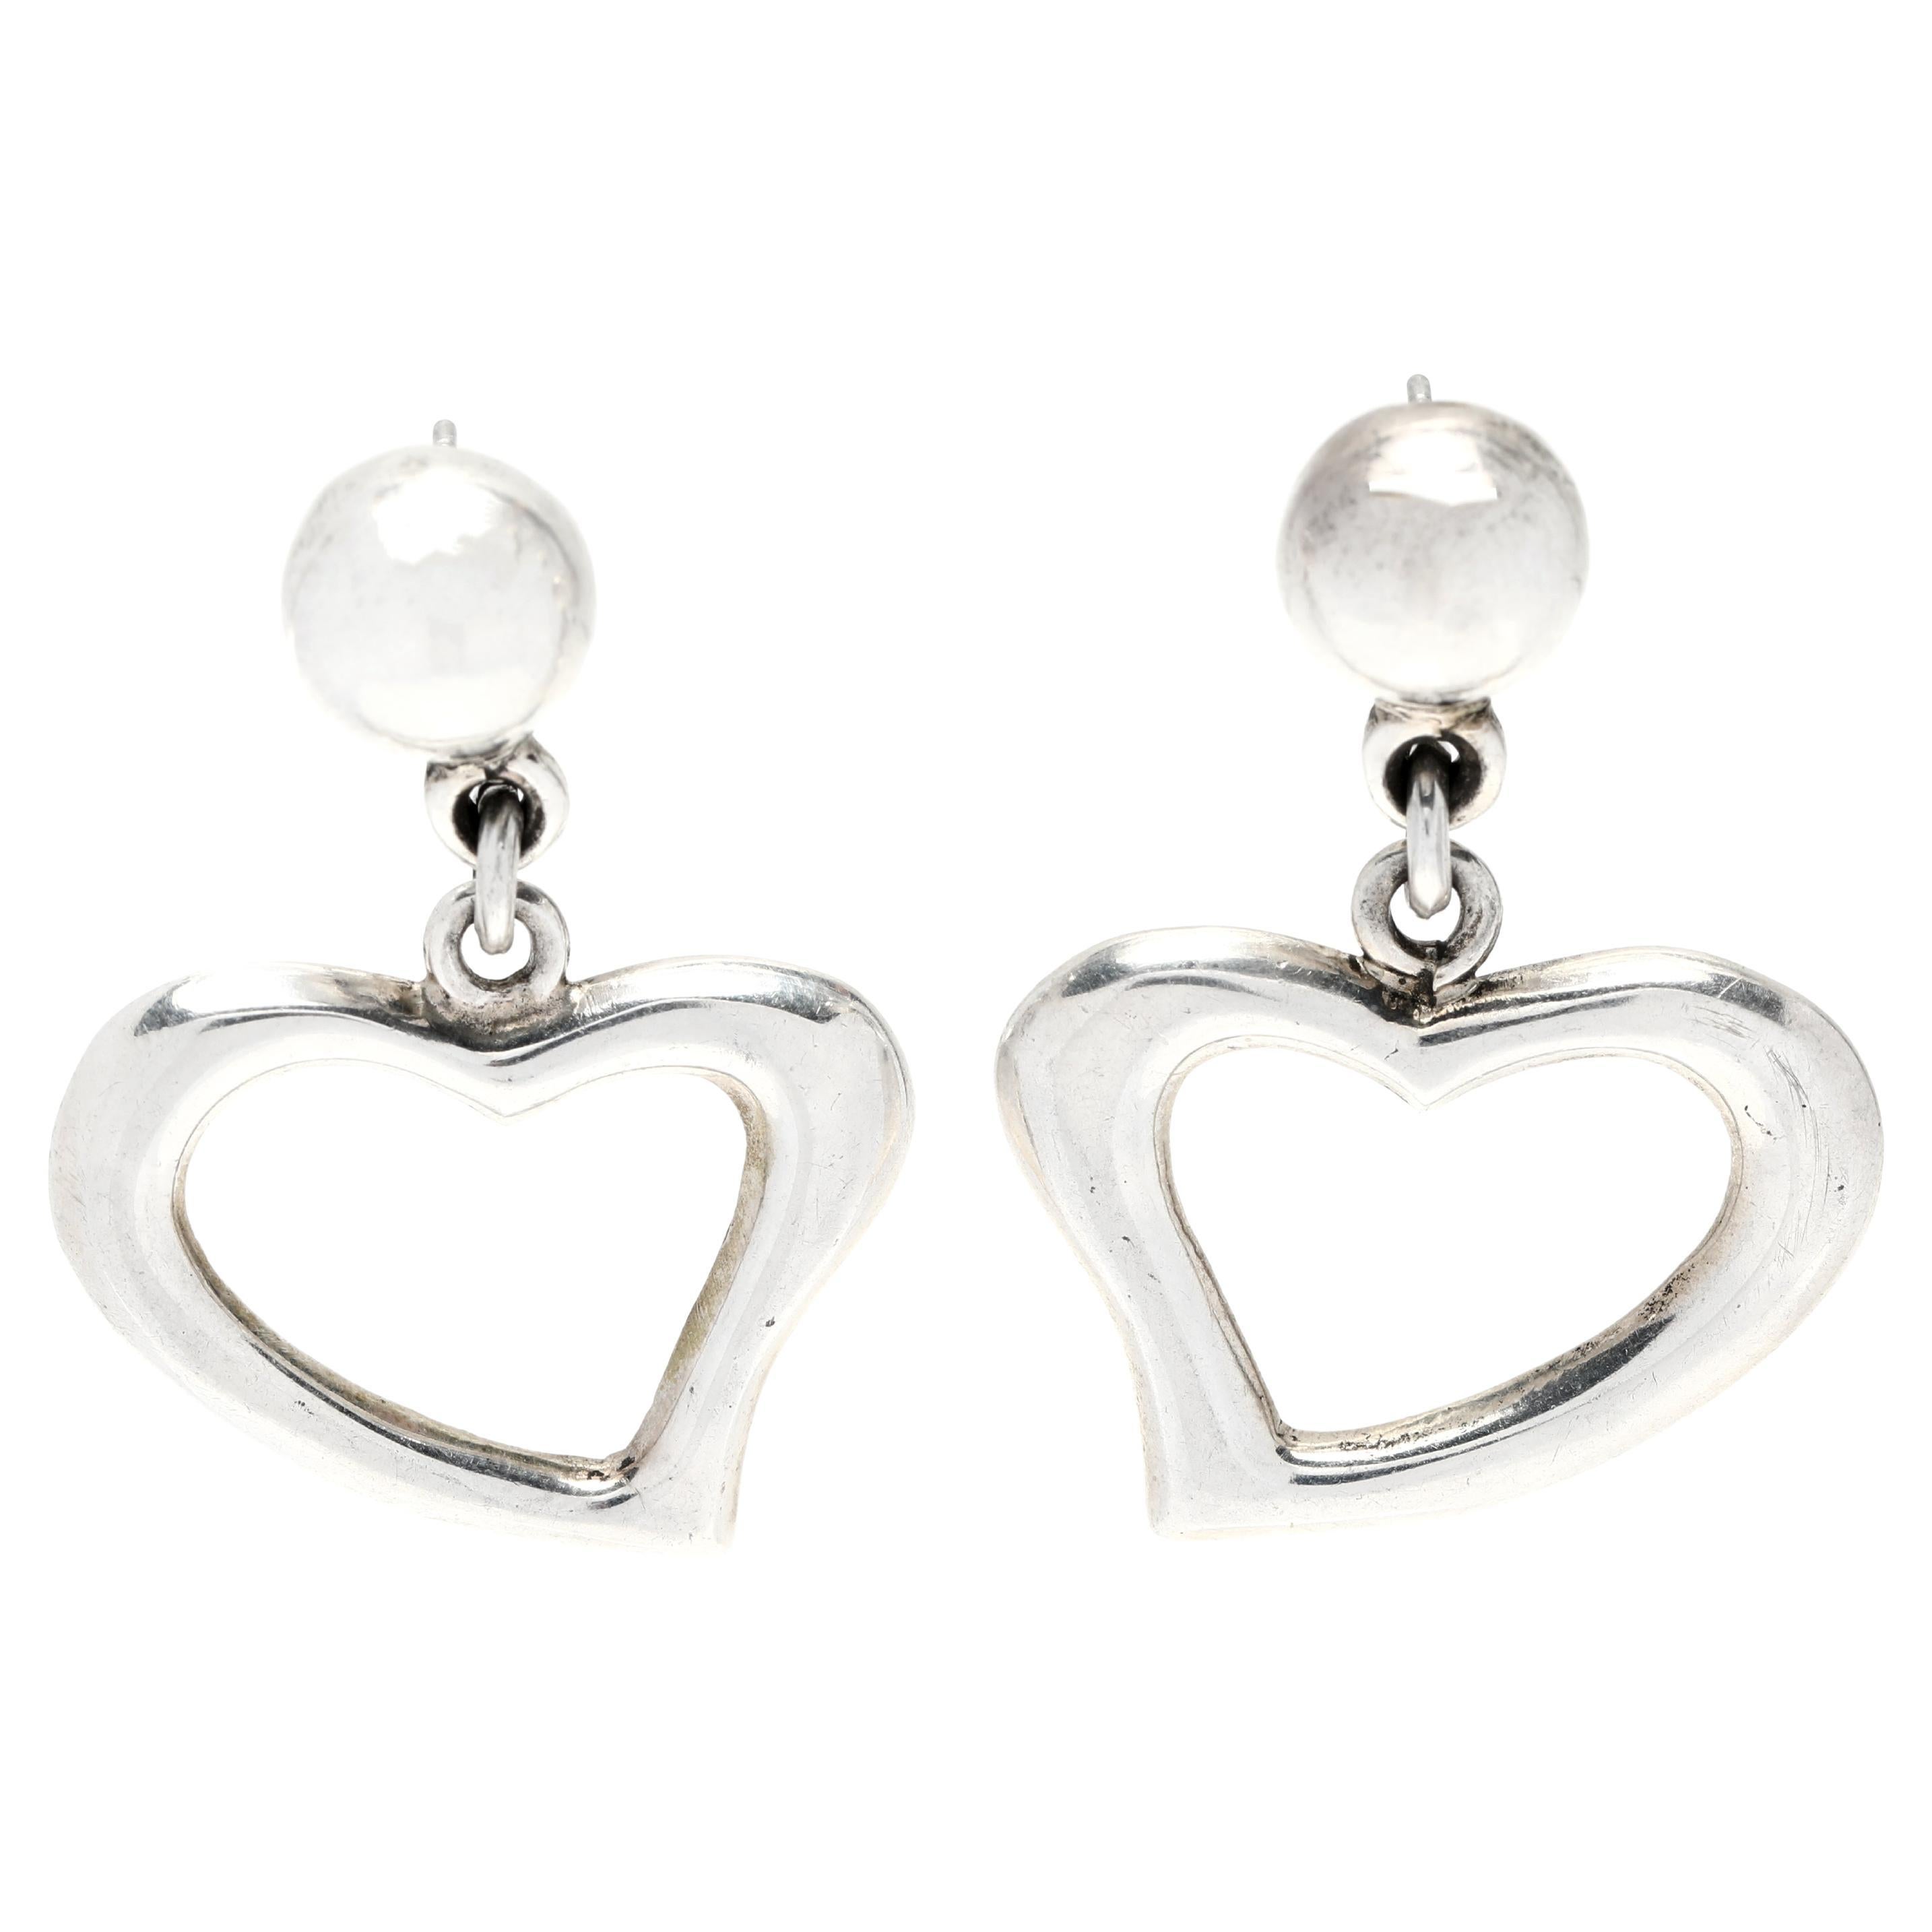 Vintage Mexican Open Heart Dangle Earrings, Sterling Silver